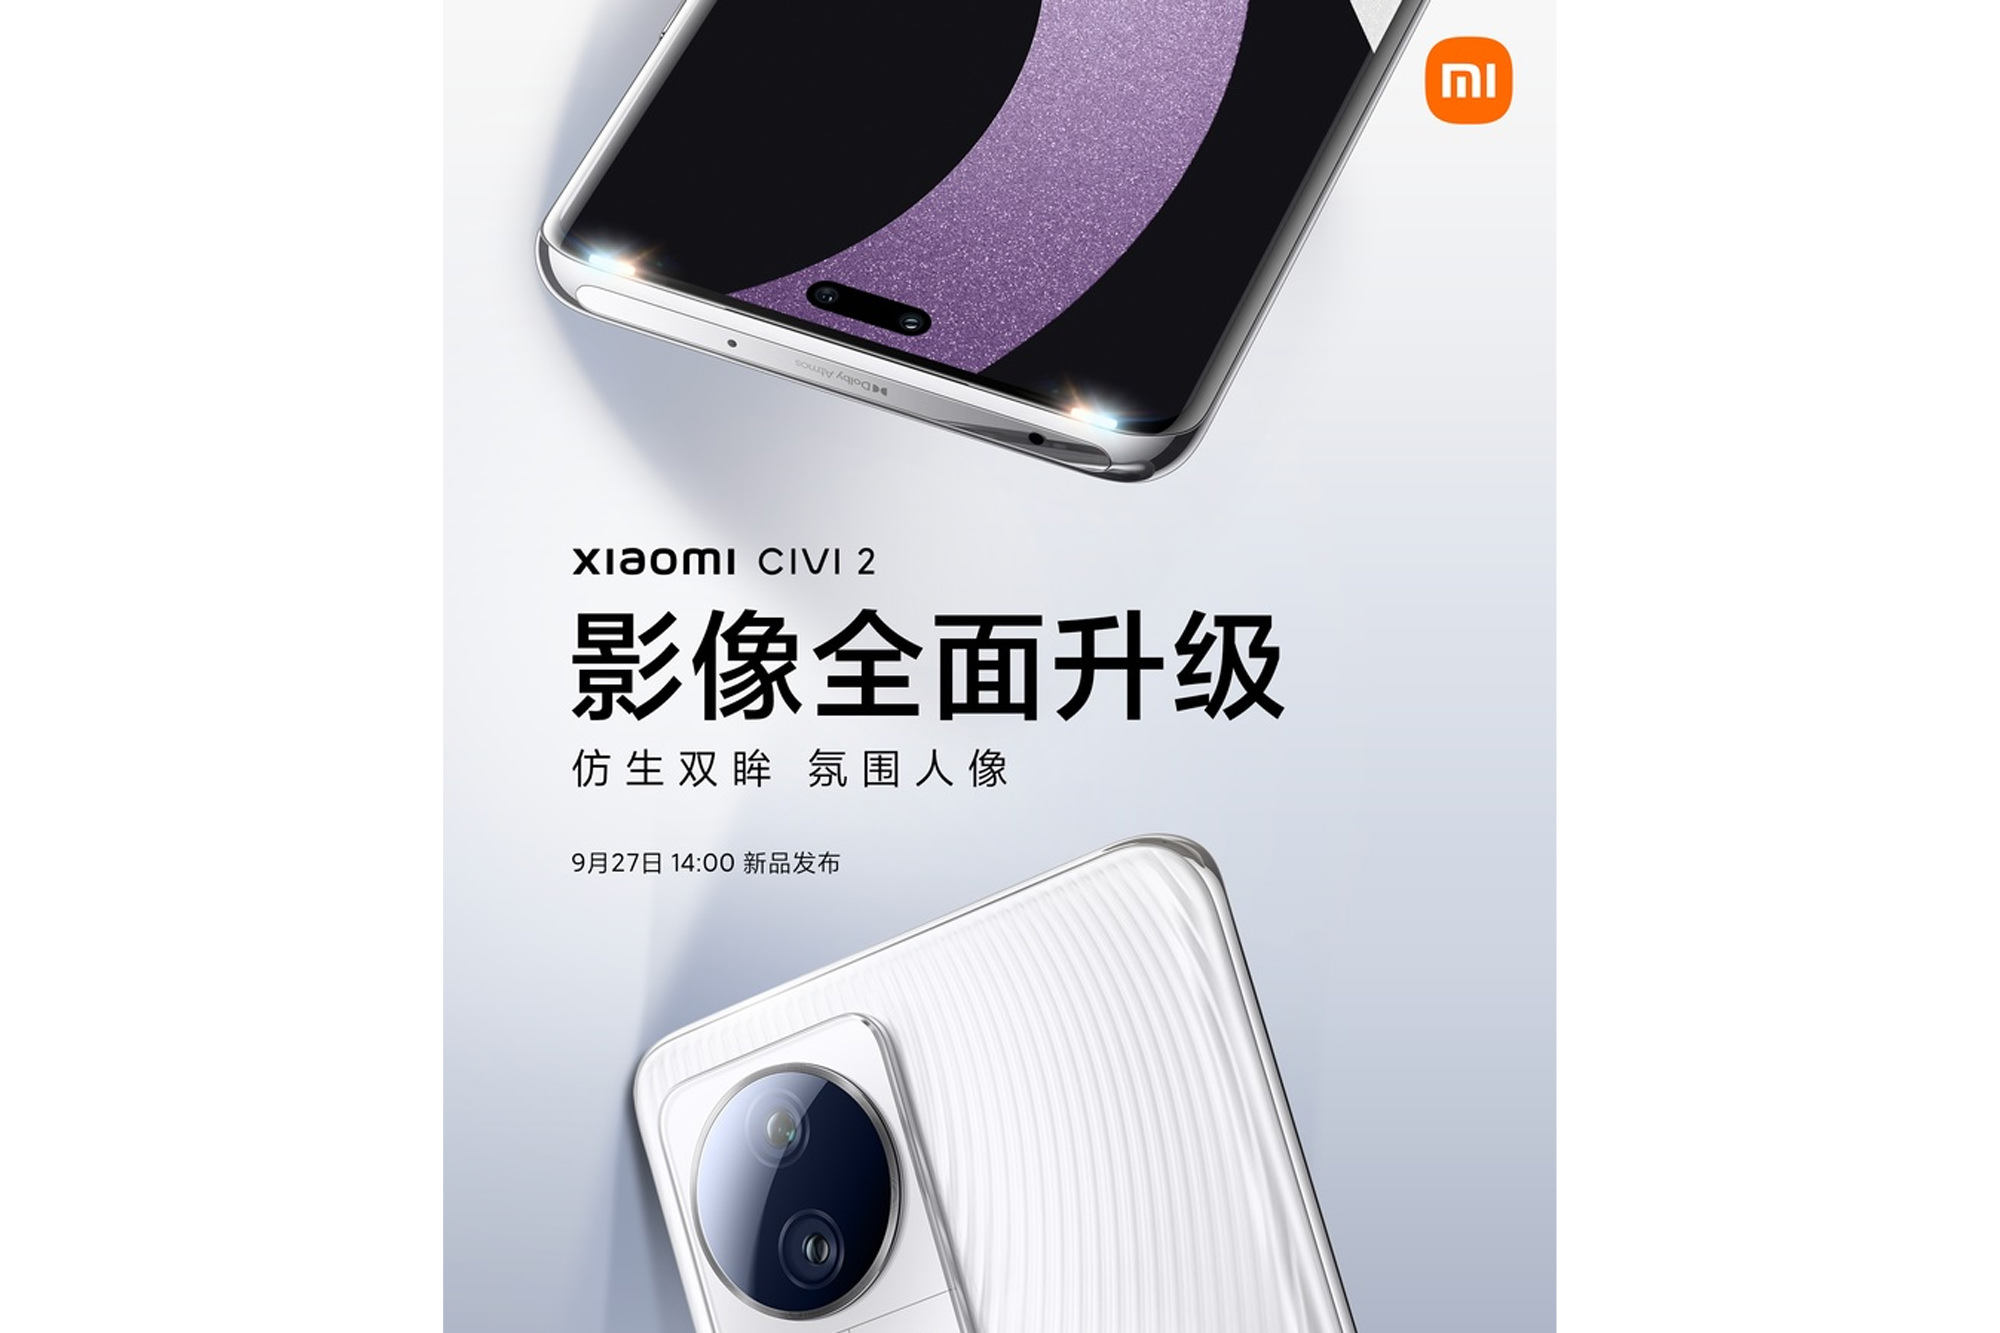 نمای پشت و جلو بخش بالایی گوشی شیائومی سیوی ۲ / Xiaomi Civi 2